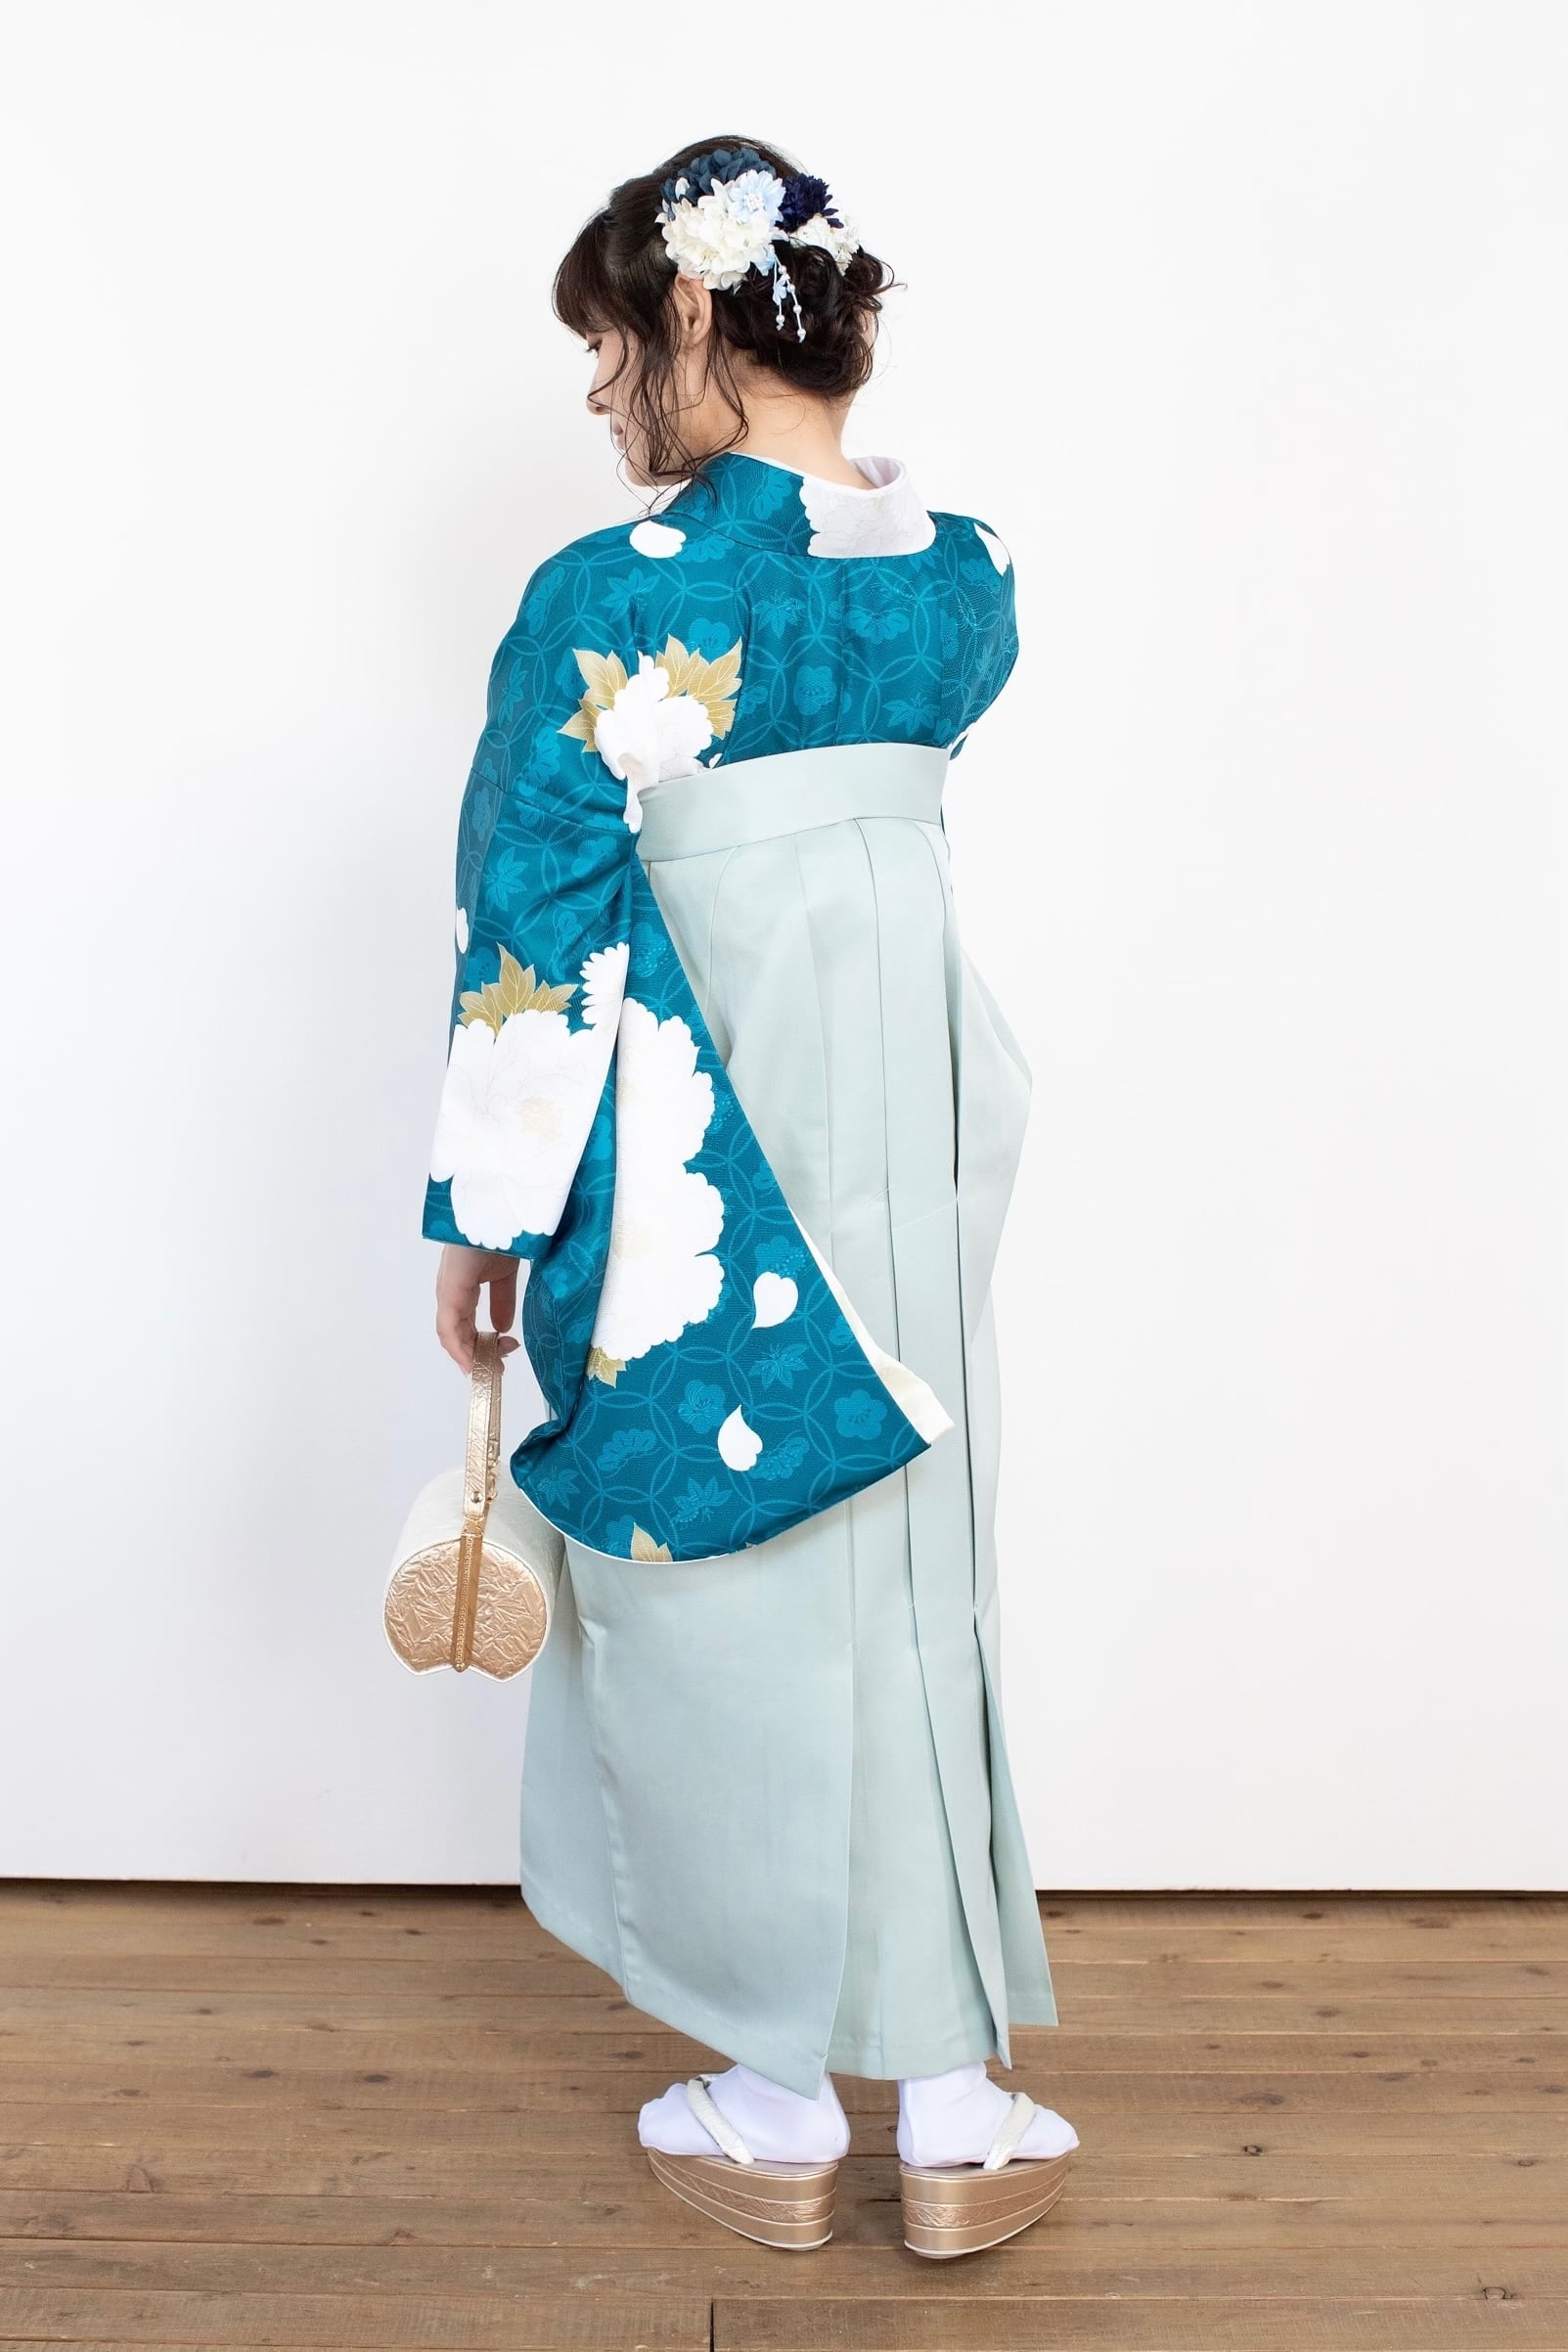 Kimono Sienne 卒業式袴3点セット 牡丹や七宝 二尺袖着物 袴 ブルーグリーン×ライトブルー 卒業式 | Kimono Sienne